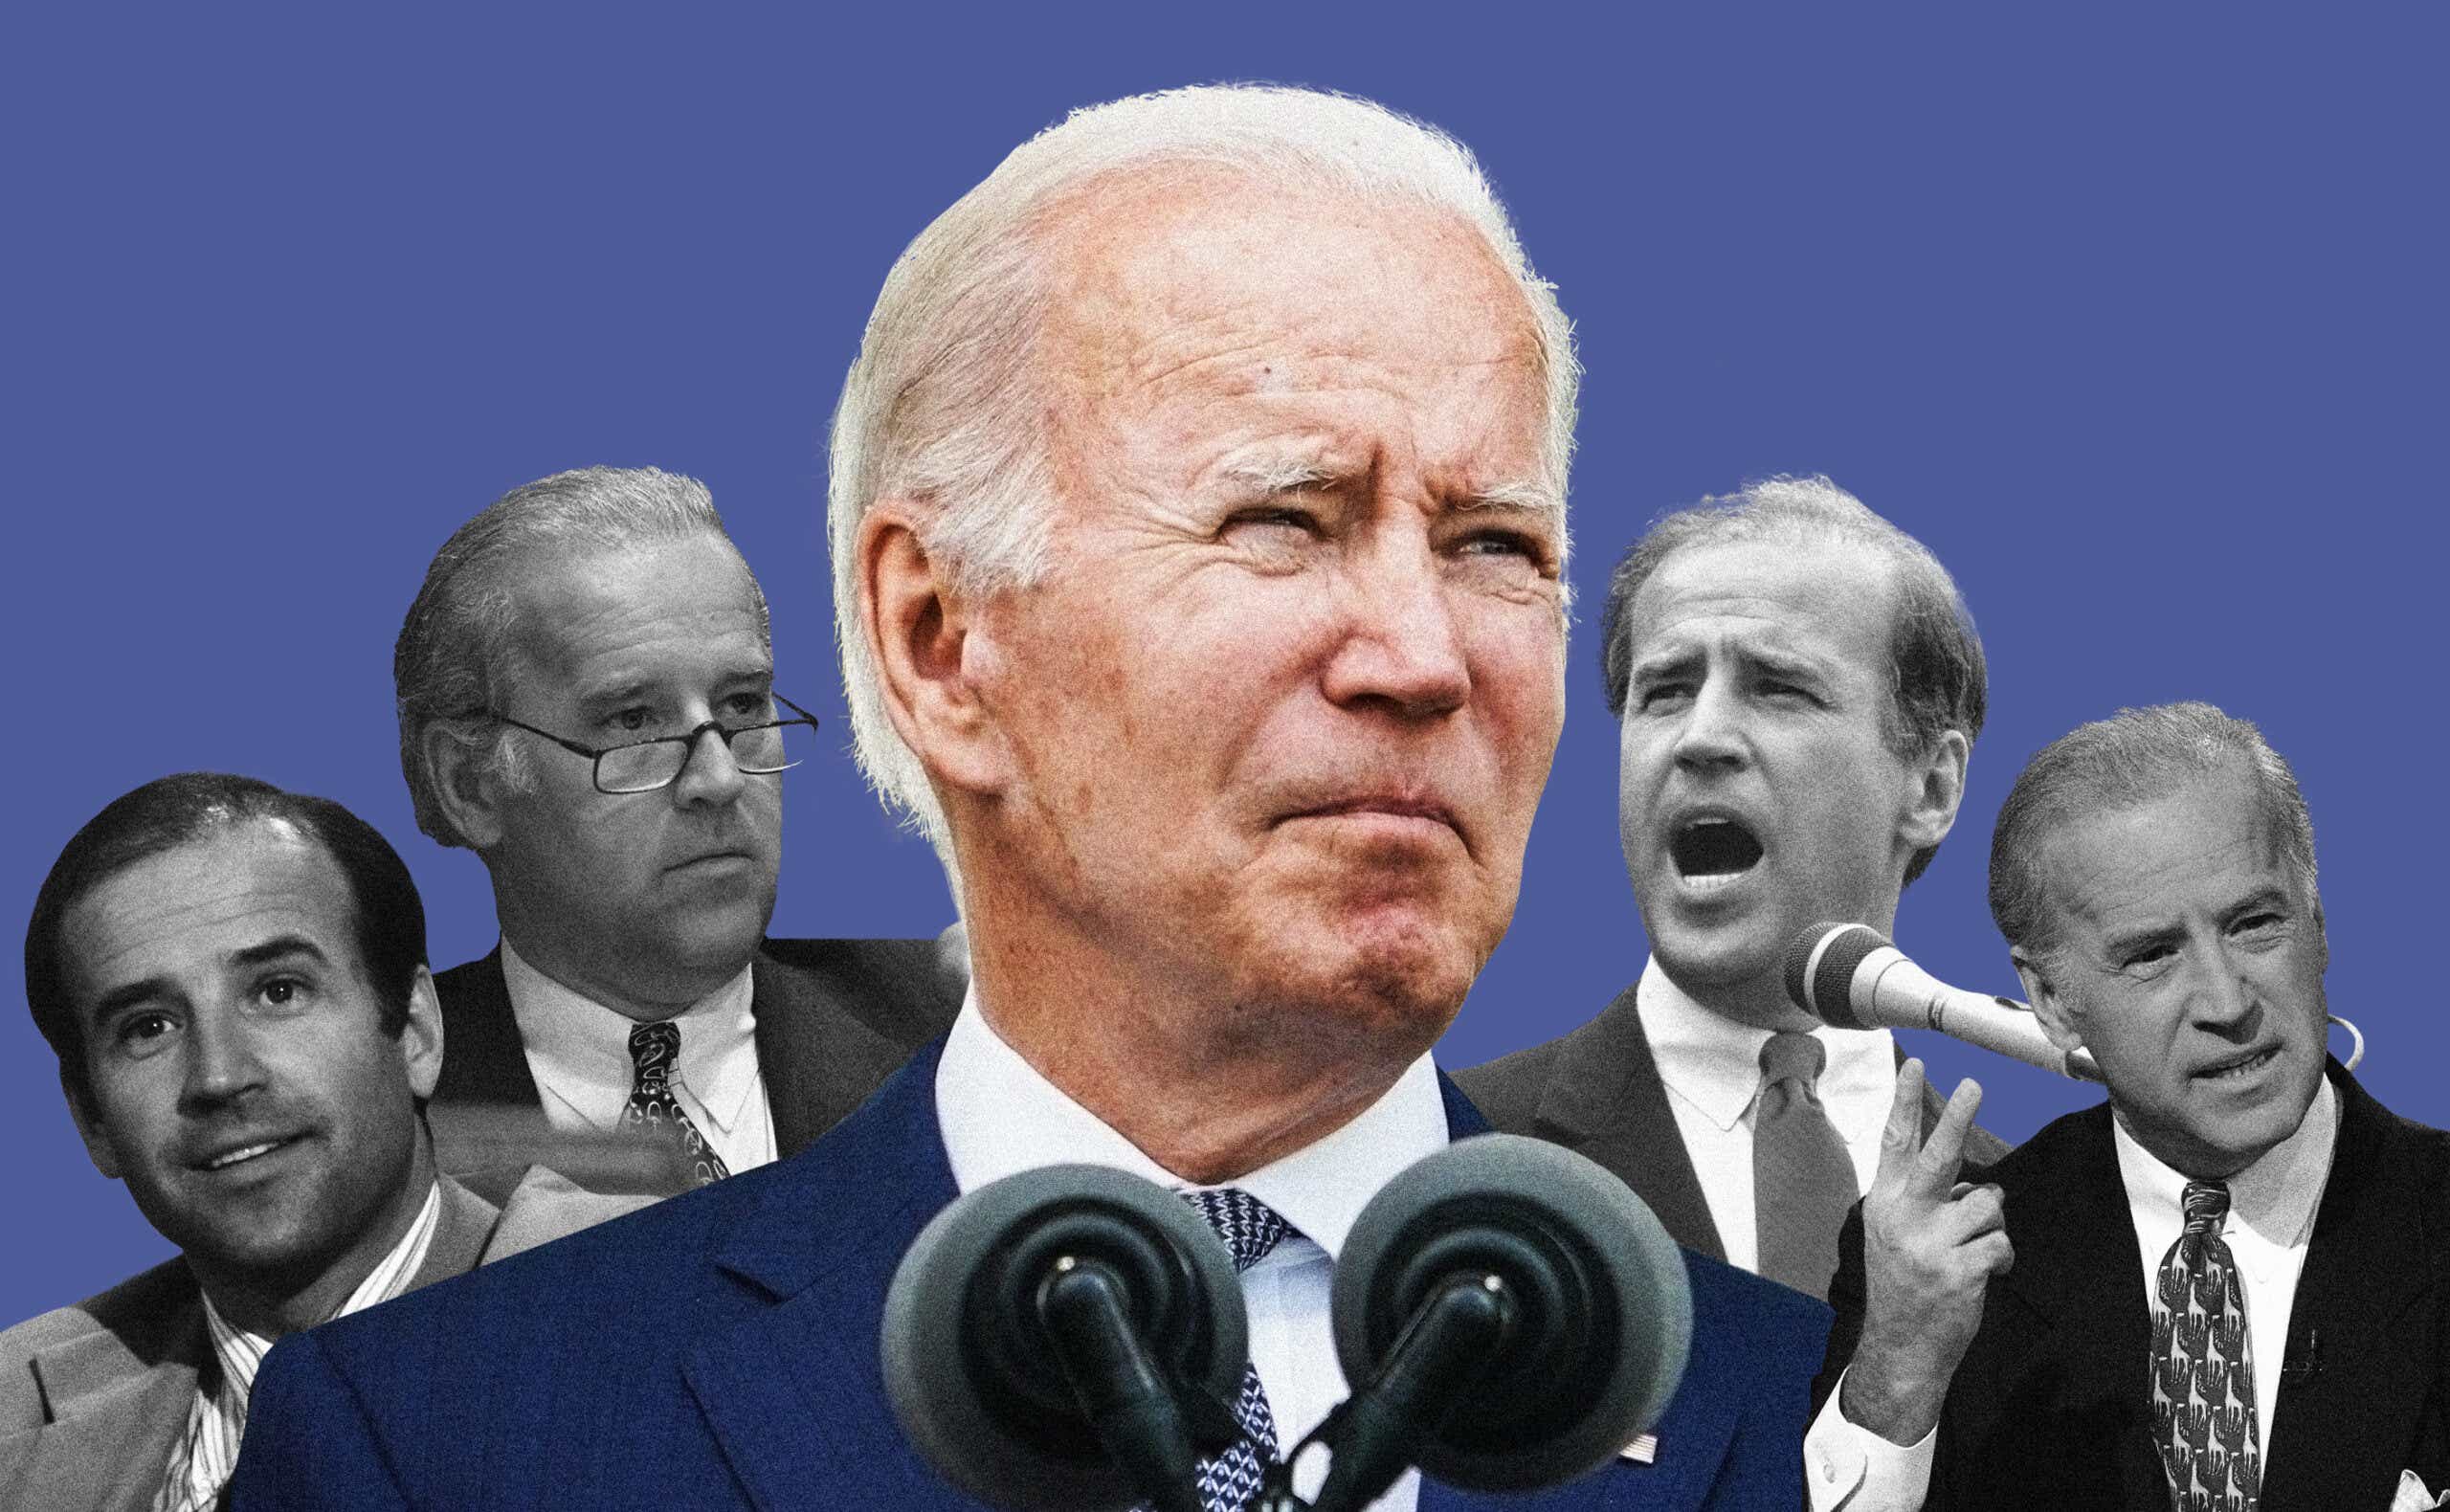 Photos of Joe Biden through the years